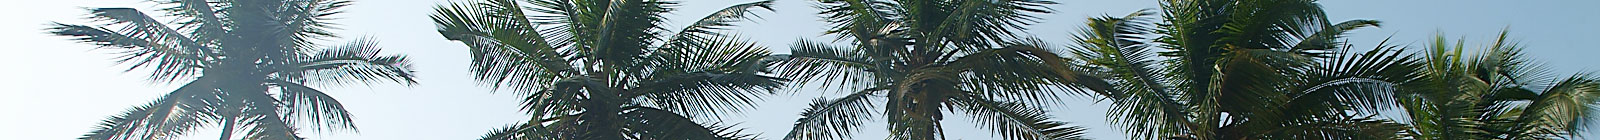 Ghana Palm Tree Tops